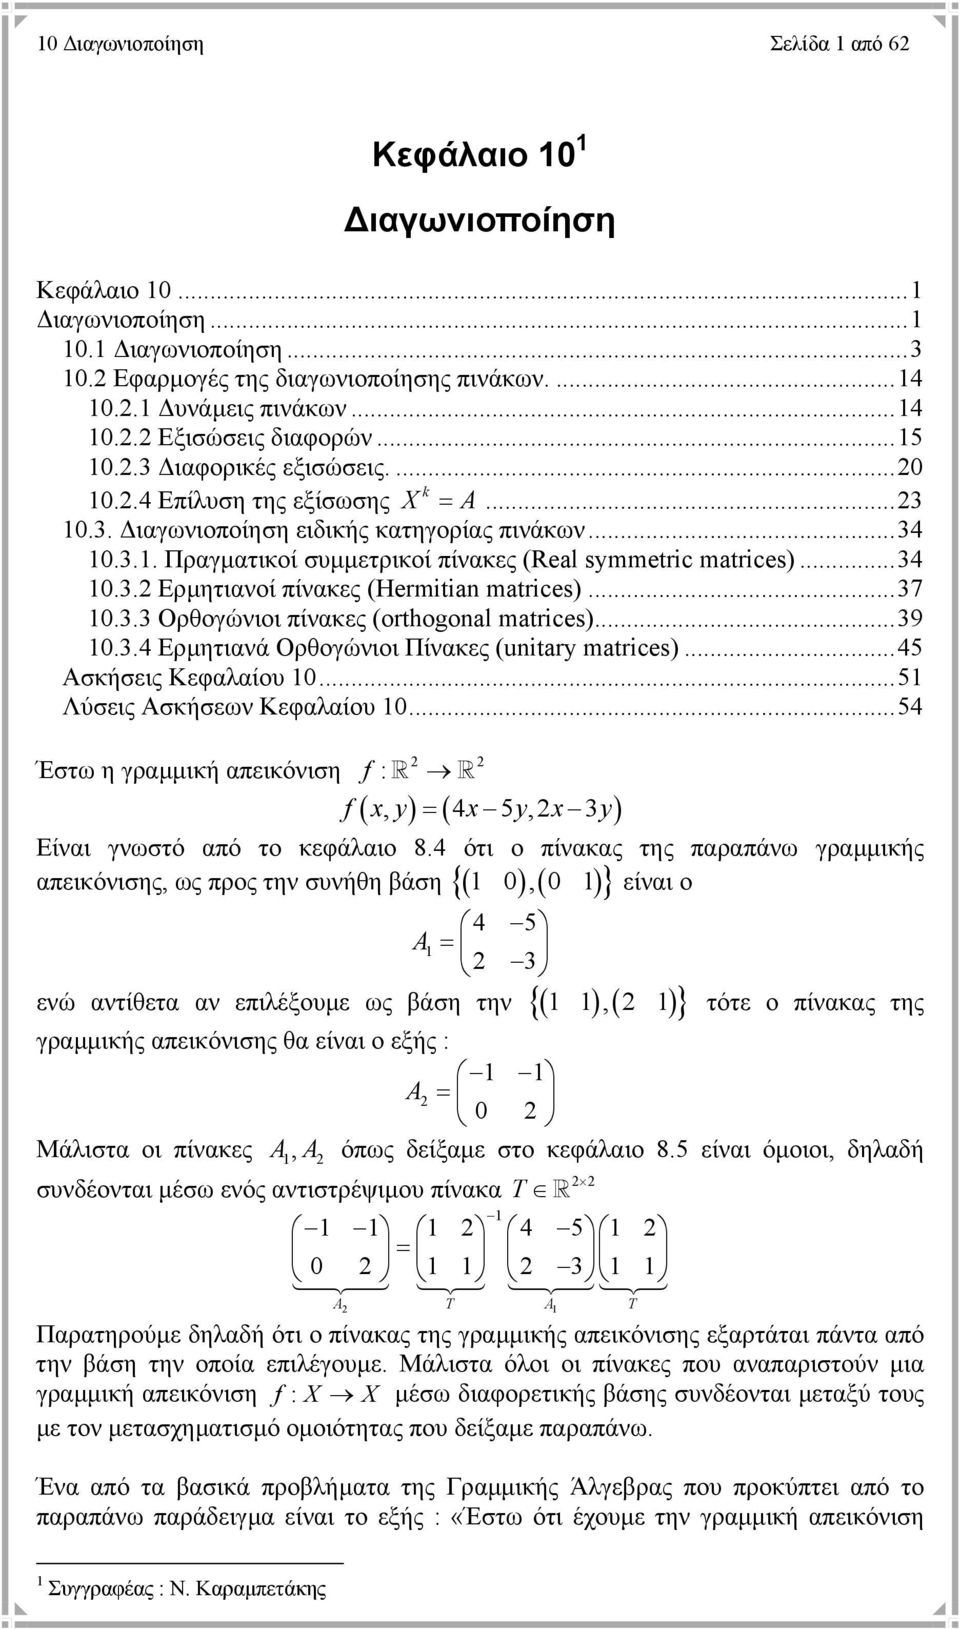 ..7.. Ορθογώνιοι πίνακες (orthogoal matrices)...9..4 Ερµητιανά Ορθογώνιοι Πίνακες (uitary matrices)...45 Ασκήσεις Κεφαλαίου...5 Λύσεις Ασκήσεων Κεφαλαίου.